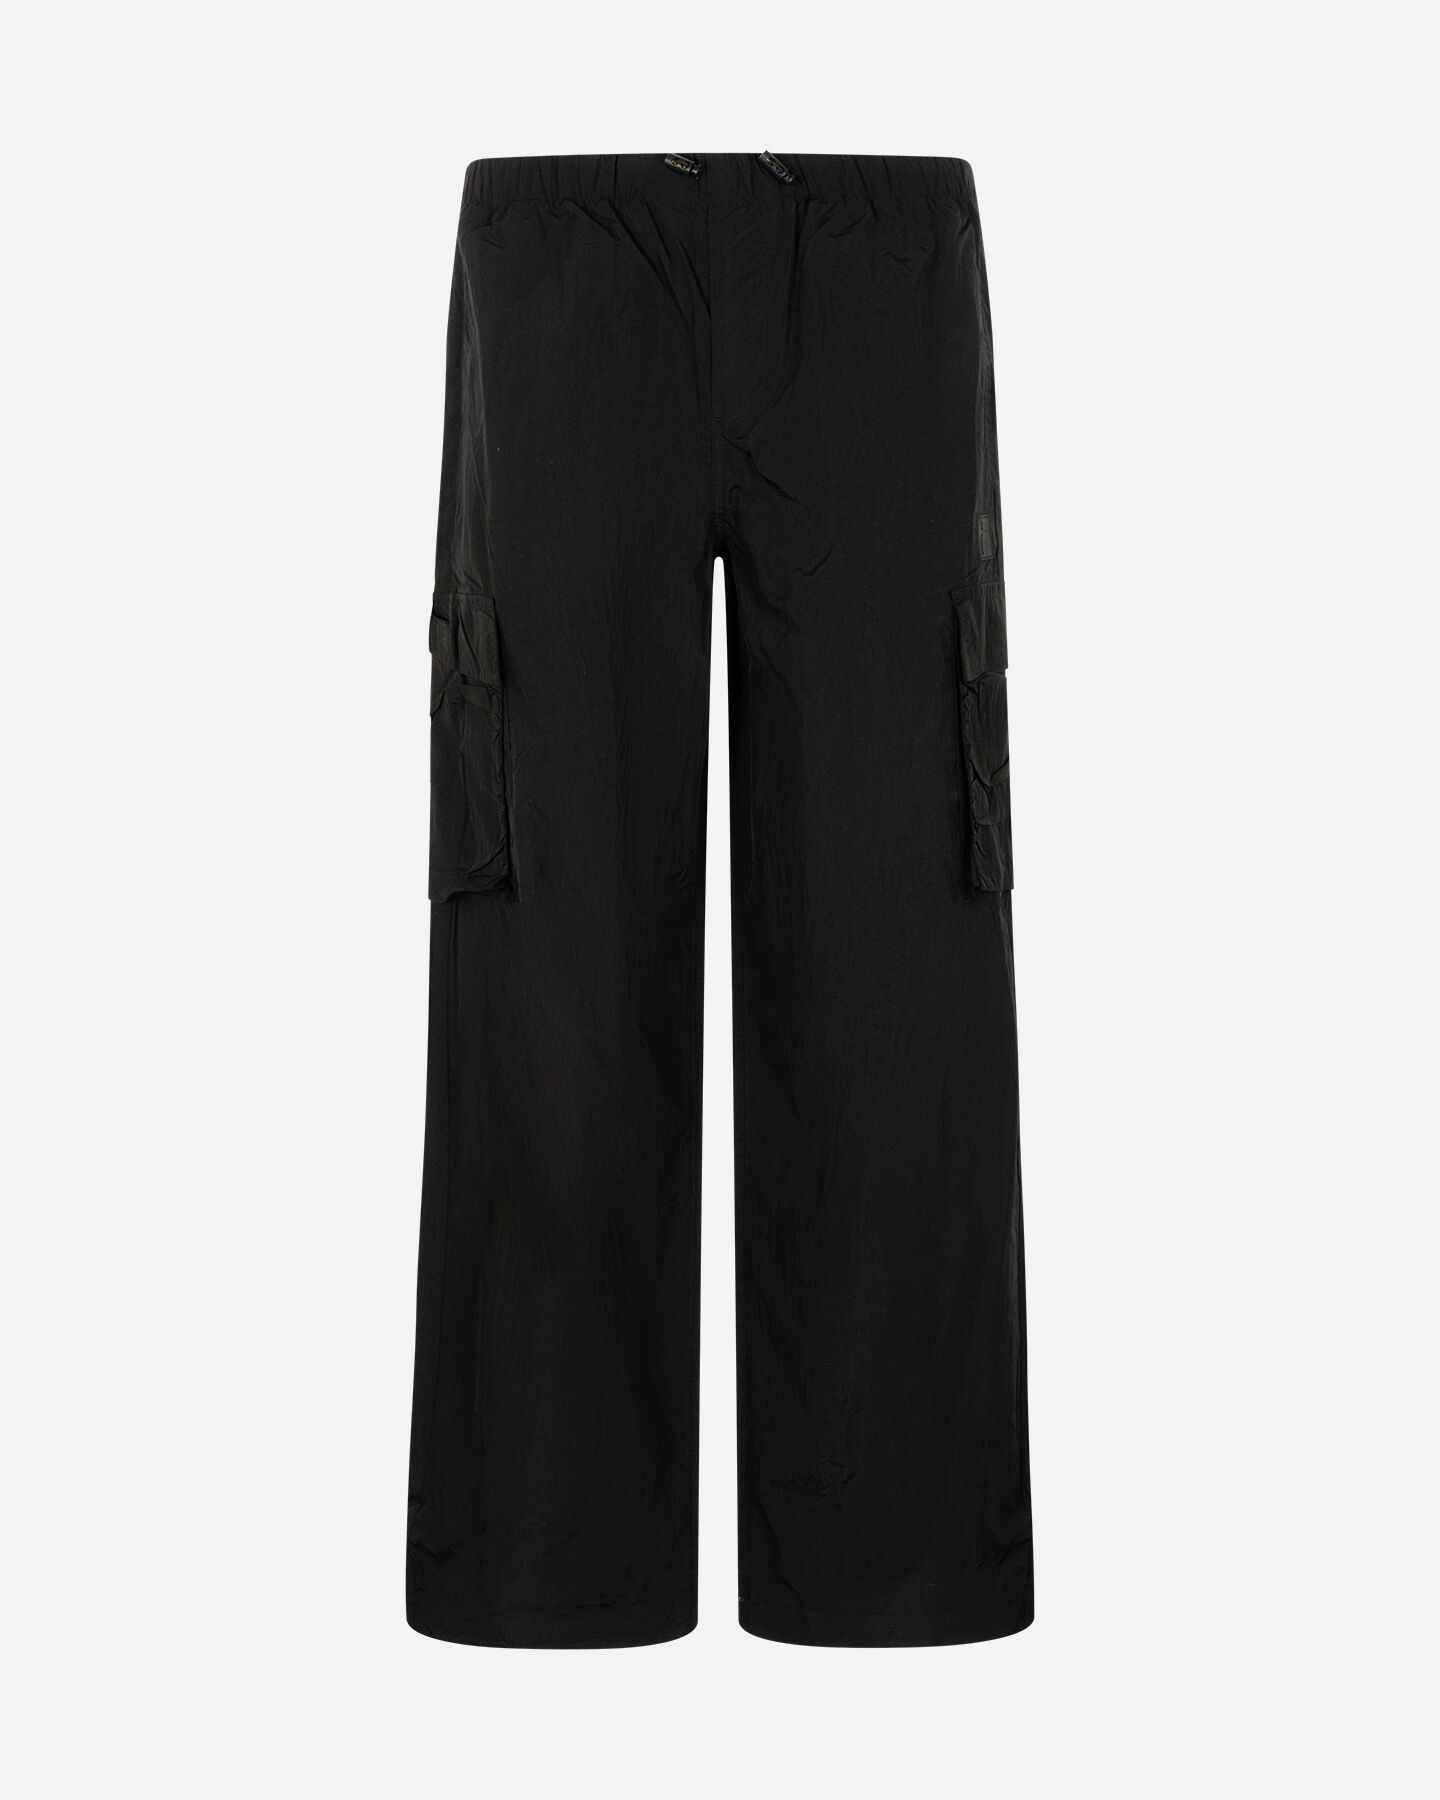  Pantalone FILA RIDER W S4130254|050|XS scatto 4